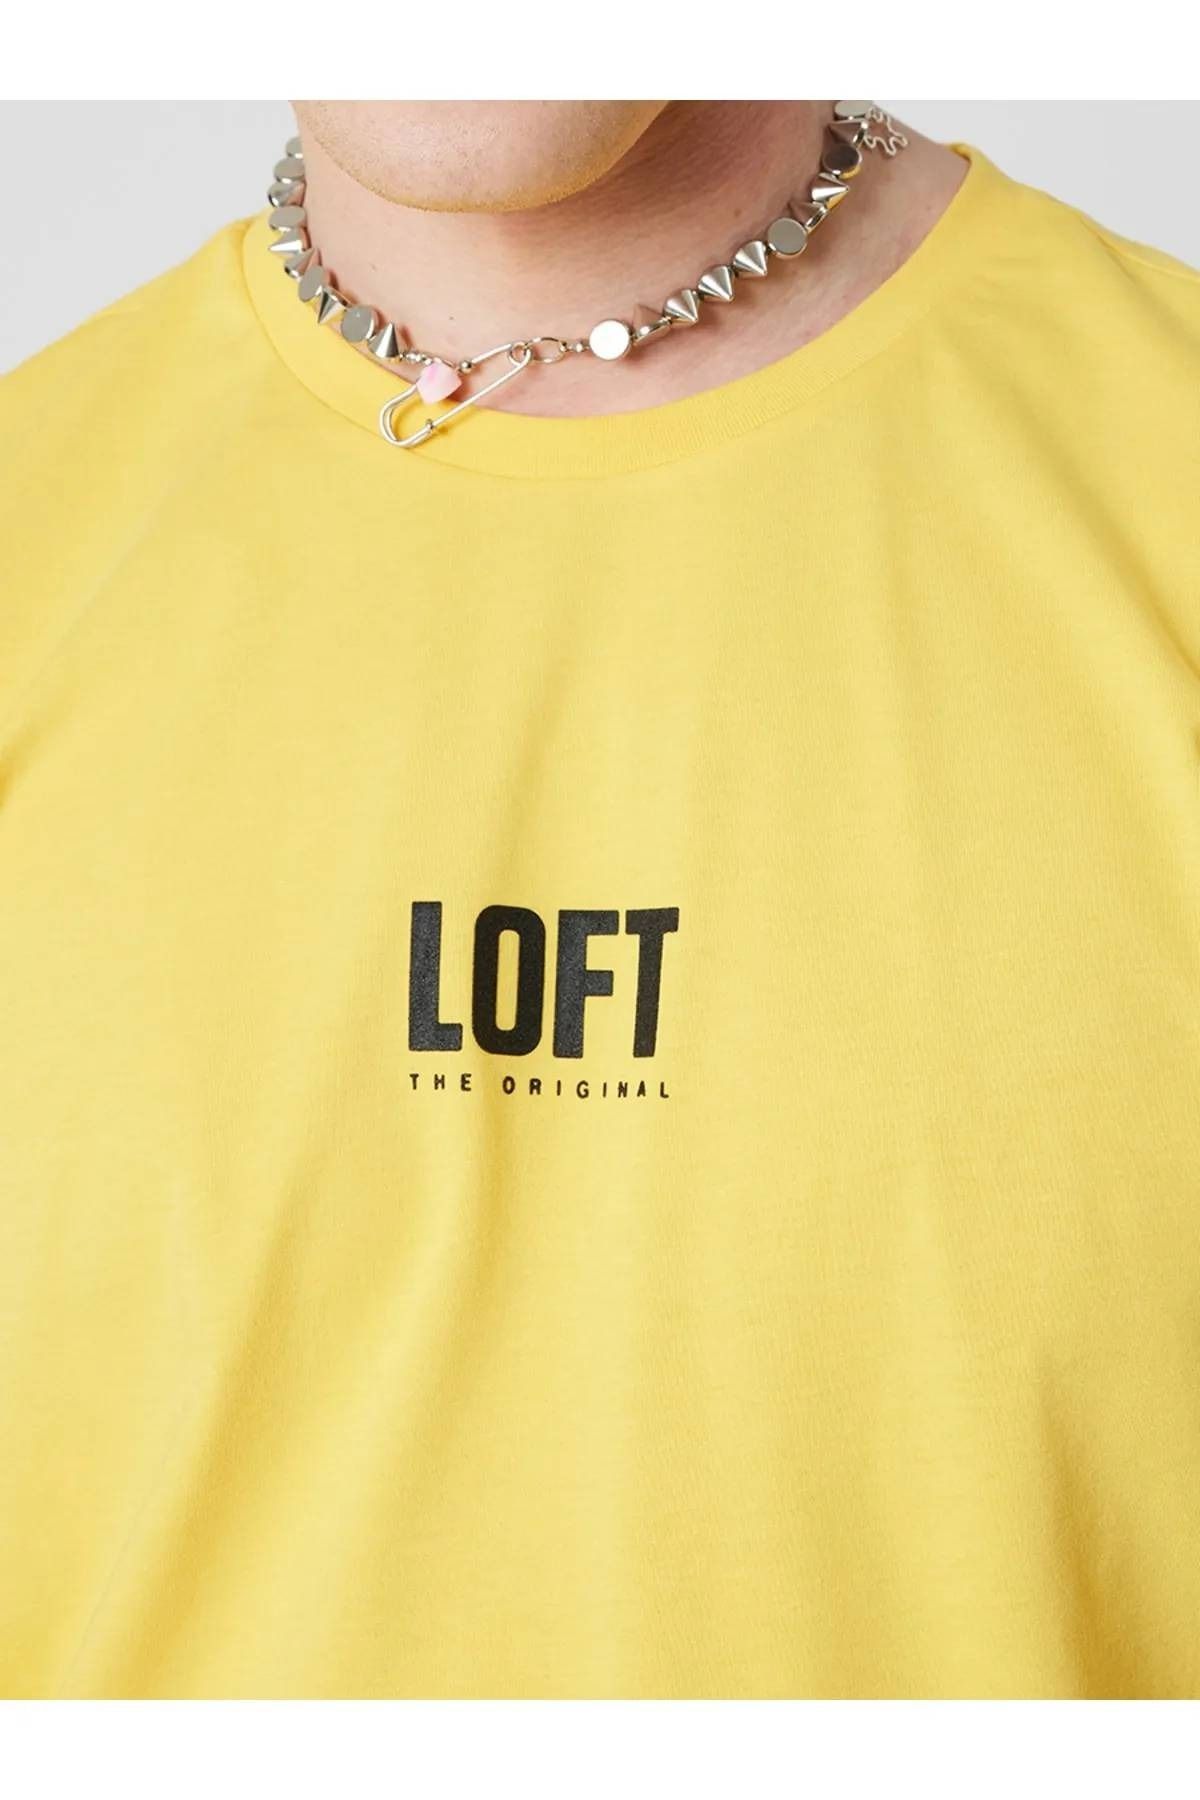 Loft تی شرت مردان LF2032079 زرد